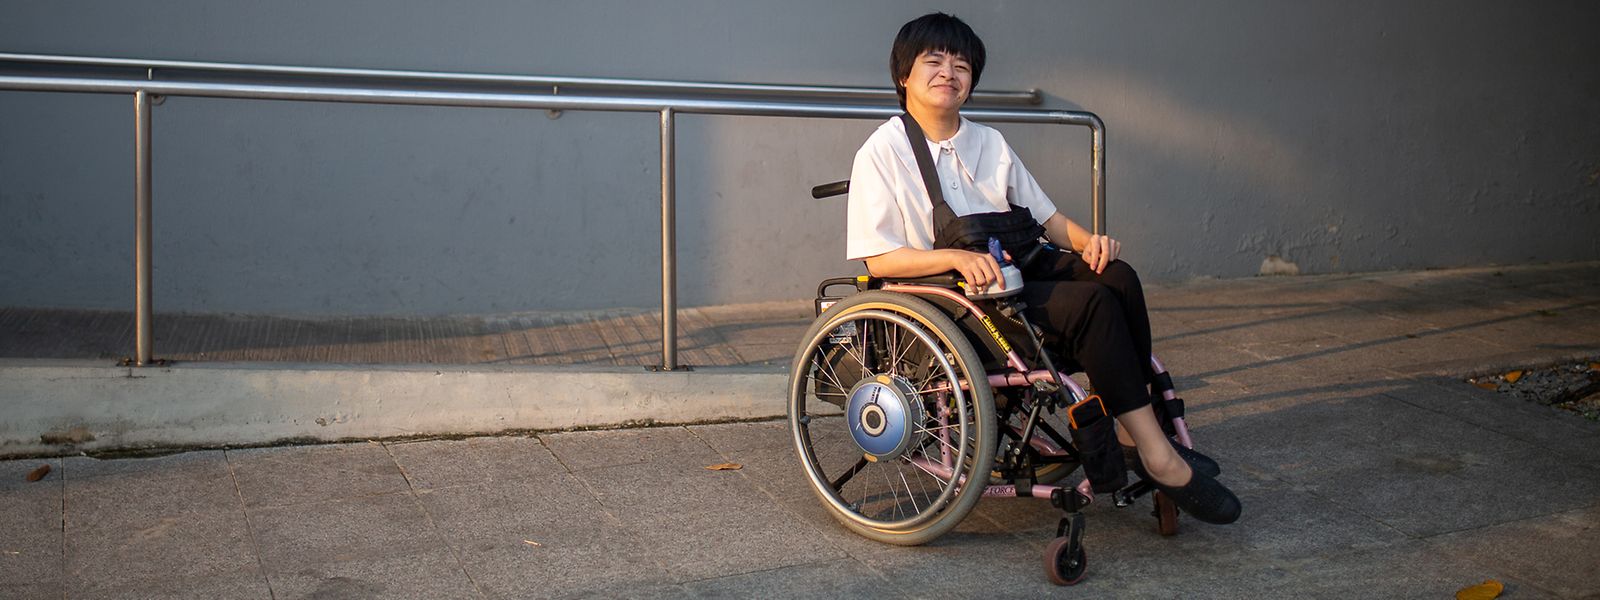 Hieu Luu, die für die UN als Anlaufstelle für Behinderte arbeitet, spielt eine herausragende Rolle bei der Kampagne für mehr Barrierefreiheit für Menschen mit Behinderungen in Vietnam.